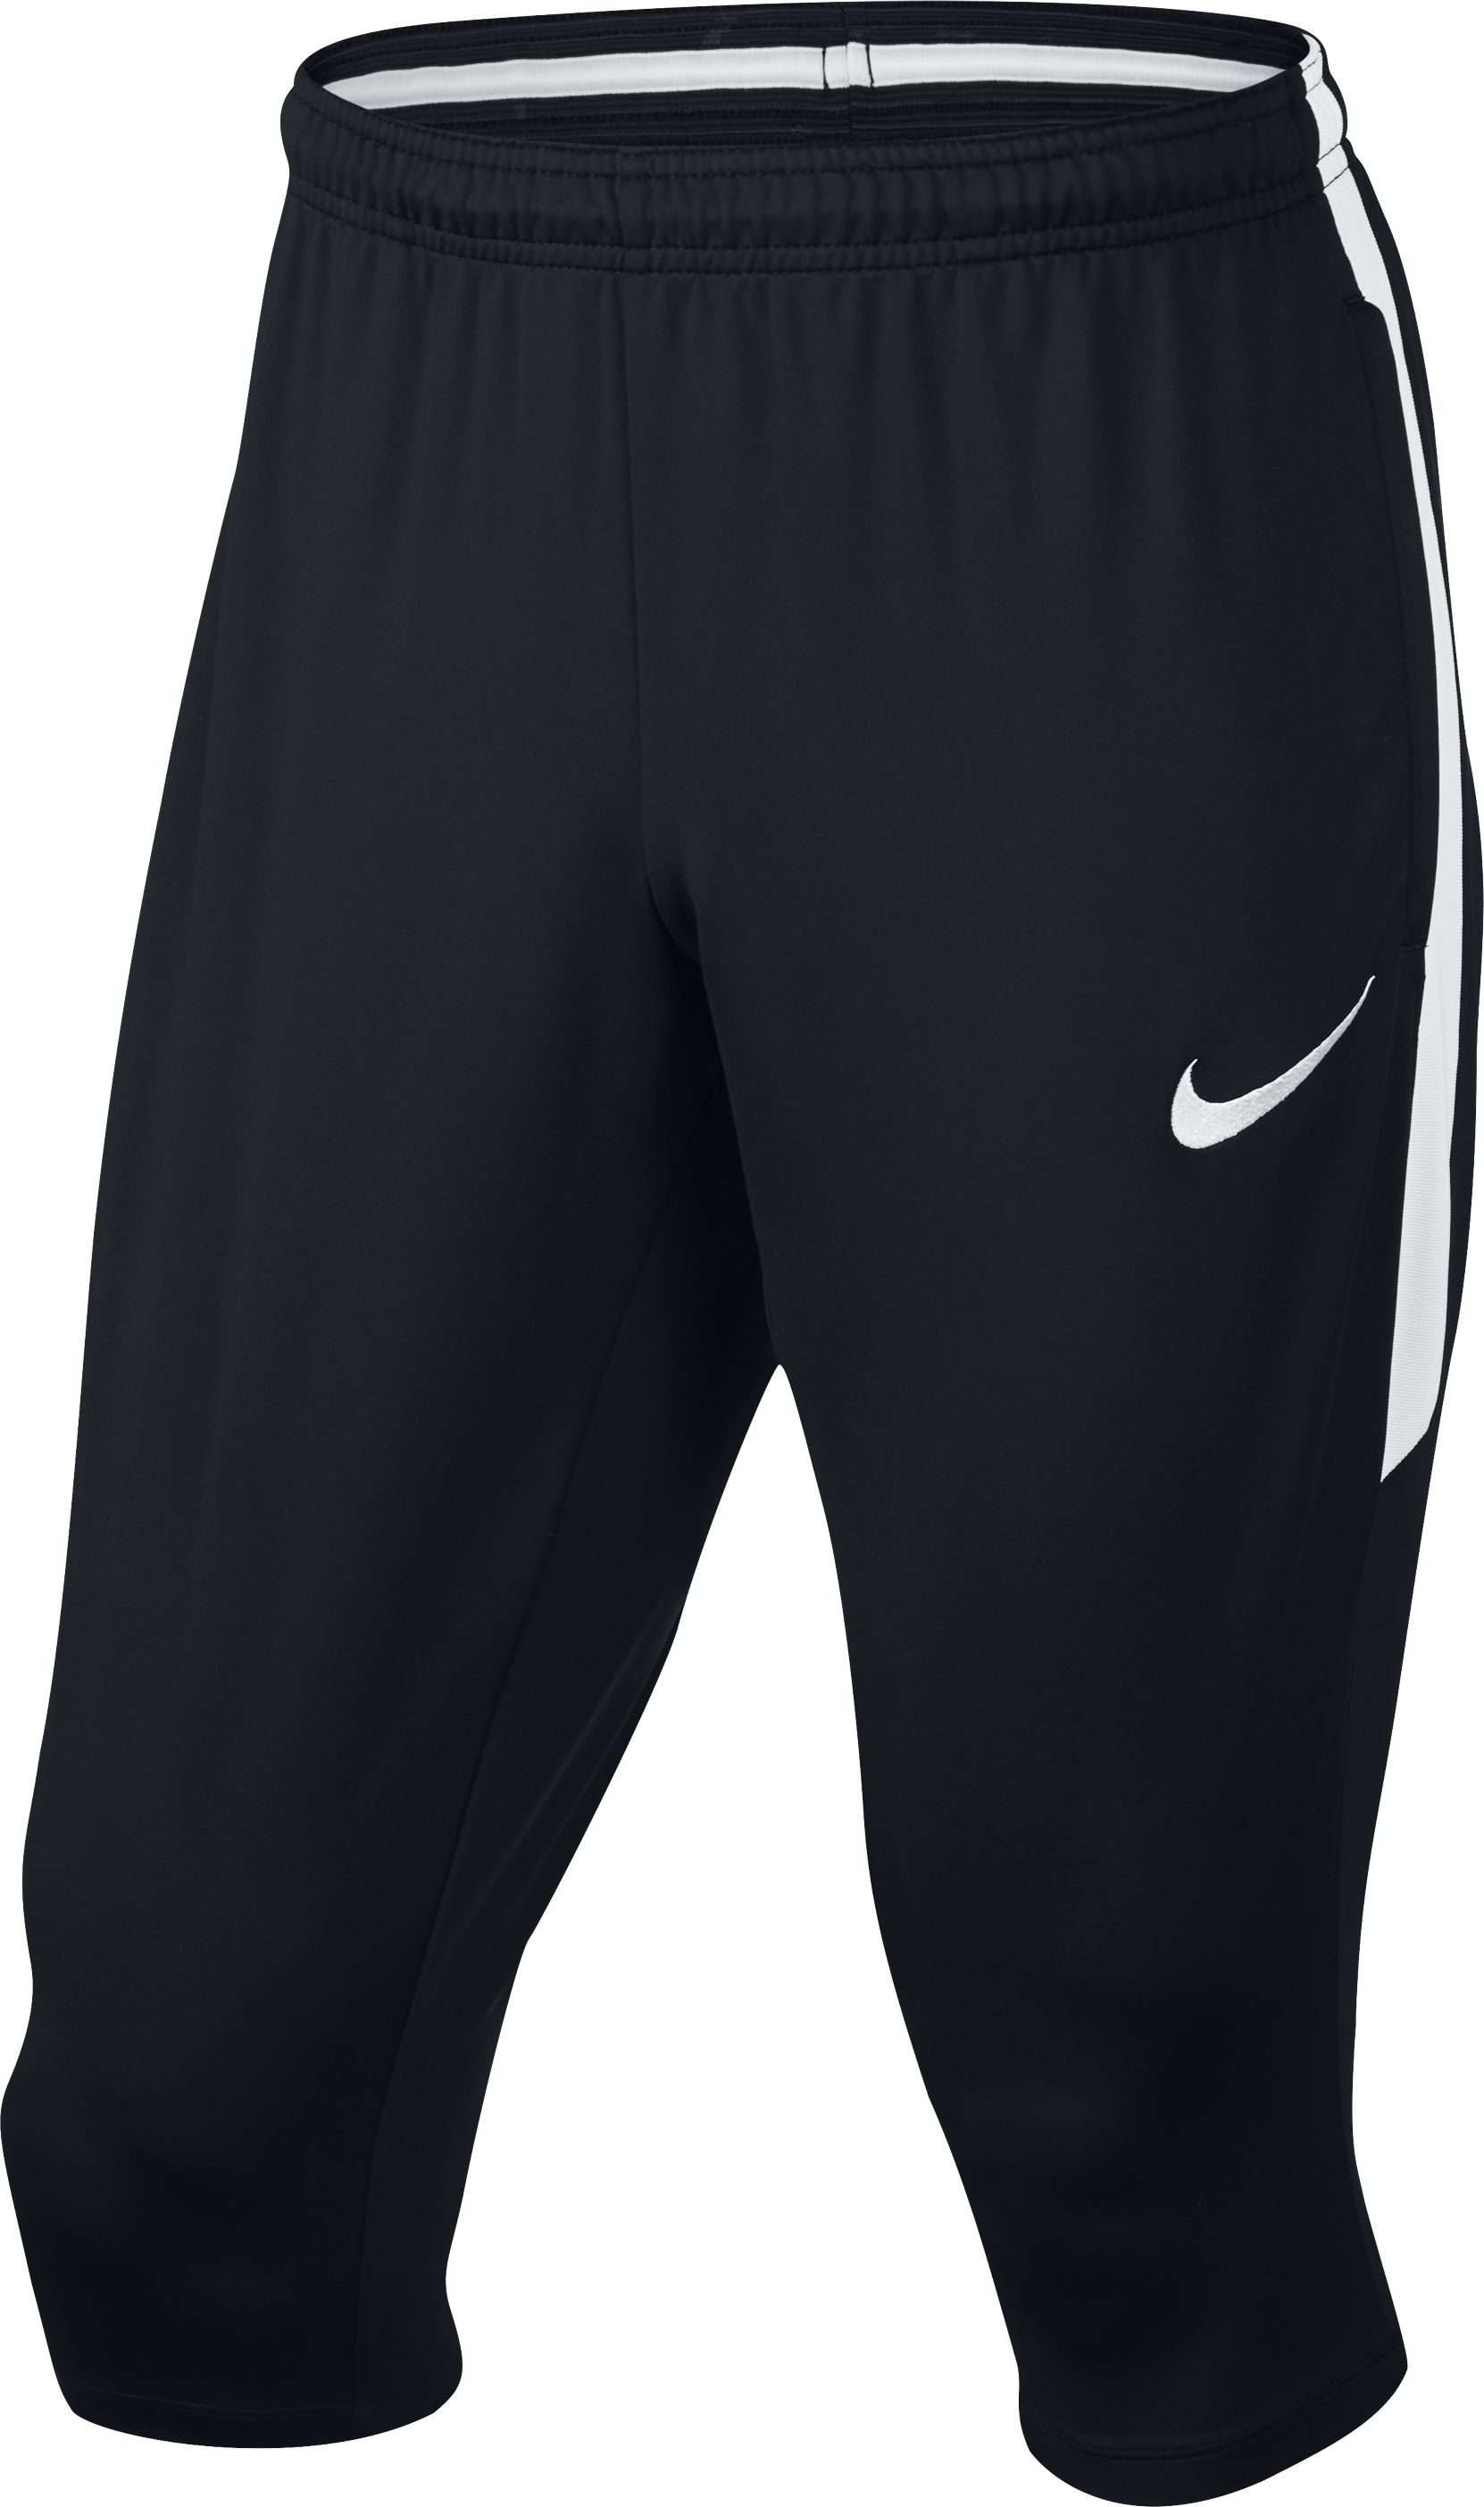 Pants Nike Football 2009